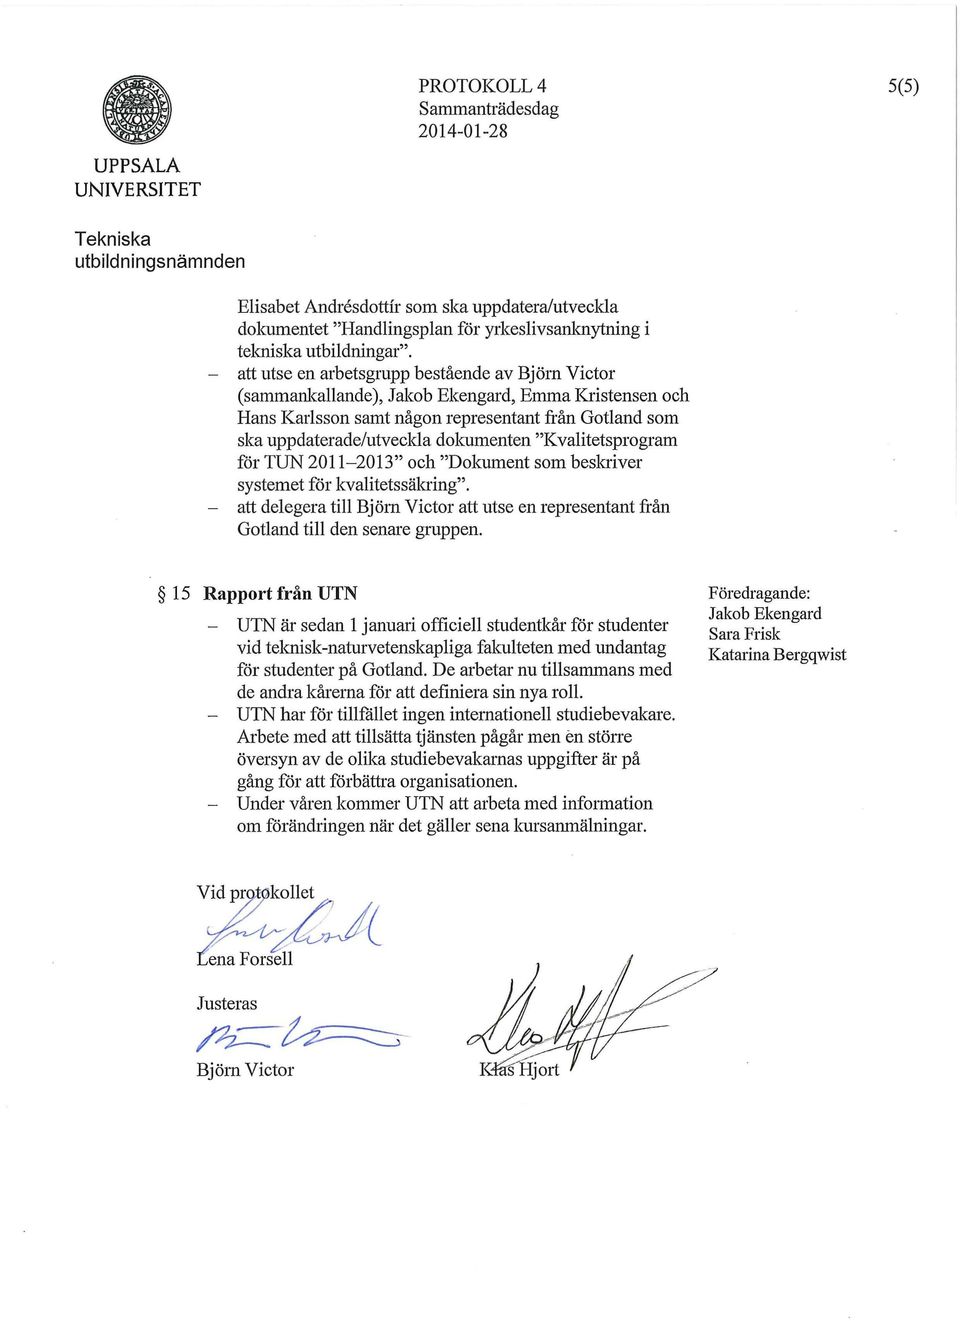 2011-2013" och "Dokument som beskriver systemet för kvalitetssäkring". - att delegera till att utse en representant från Gotland till den senare gruppen.